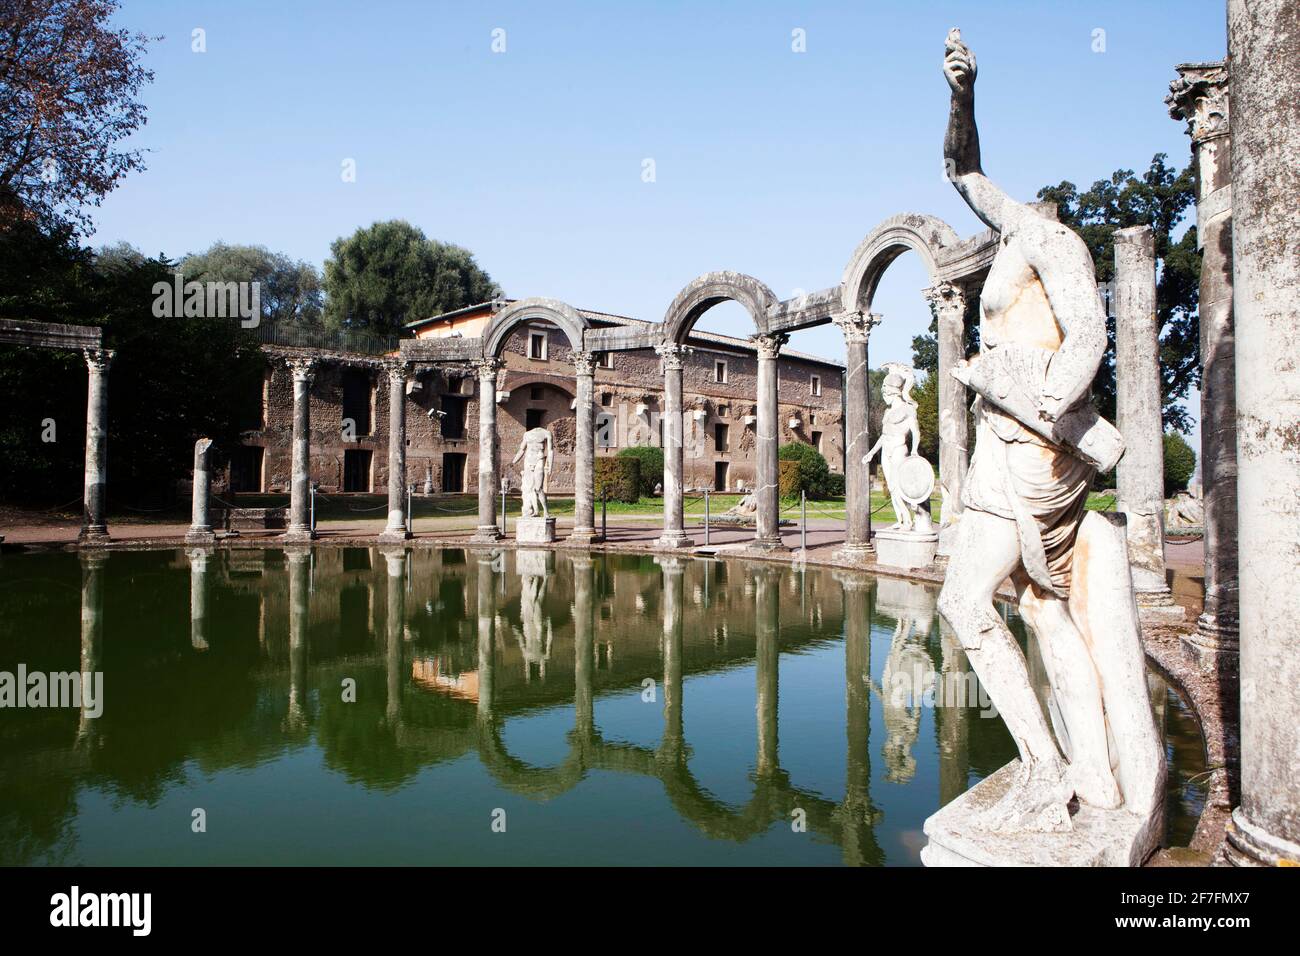 Piscina Canopus, Villa Adriana (Villa Adriana), Patrimonio dell'Umanità dell'UNESCO, Tivoli, Lazio, Italia, Europa Foto Stock